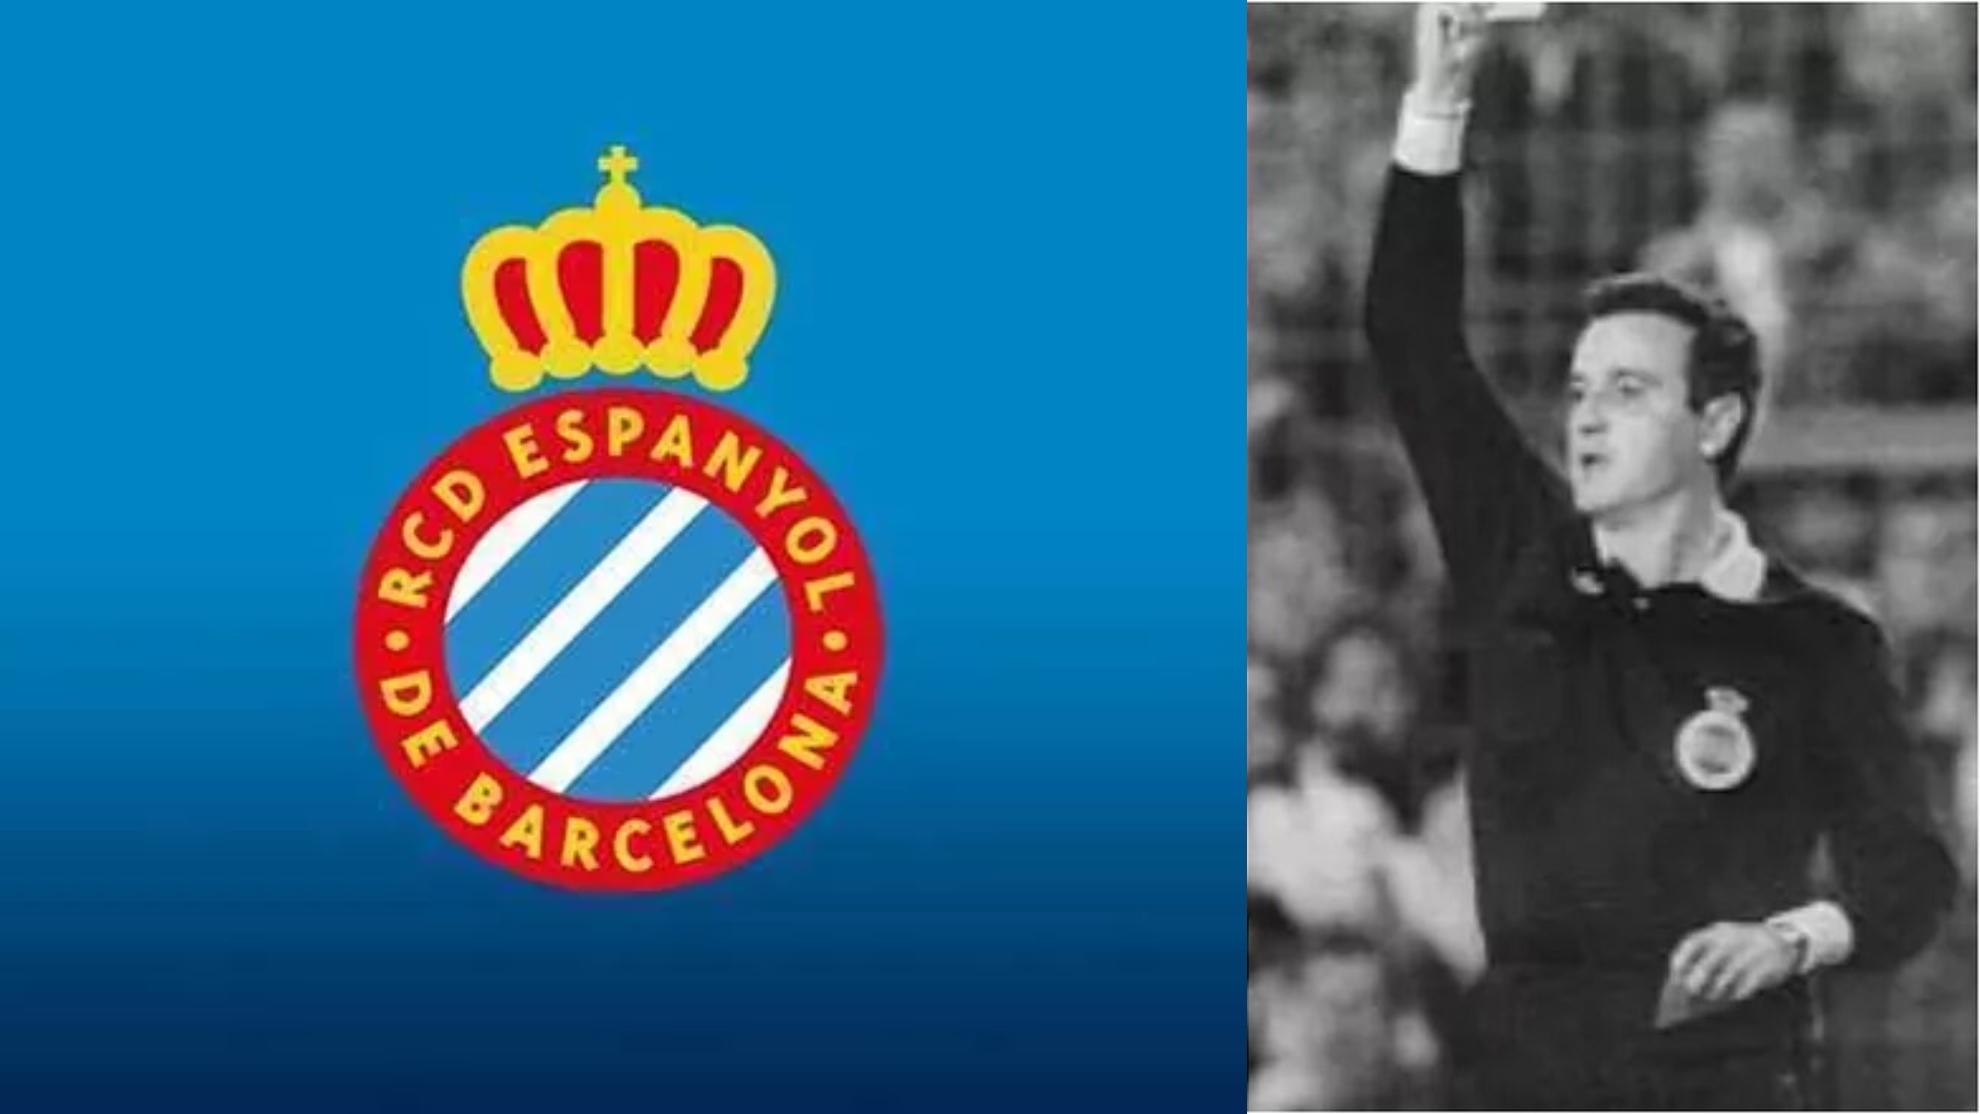 El Espanyol, el siguiente en sumarse: "Apelamos al resto de clubes y organismos para que den un paso adelante"